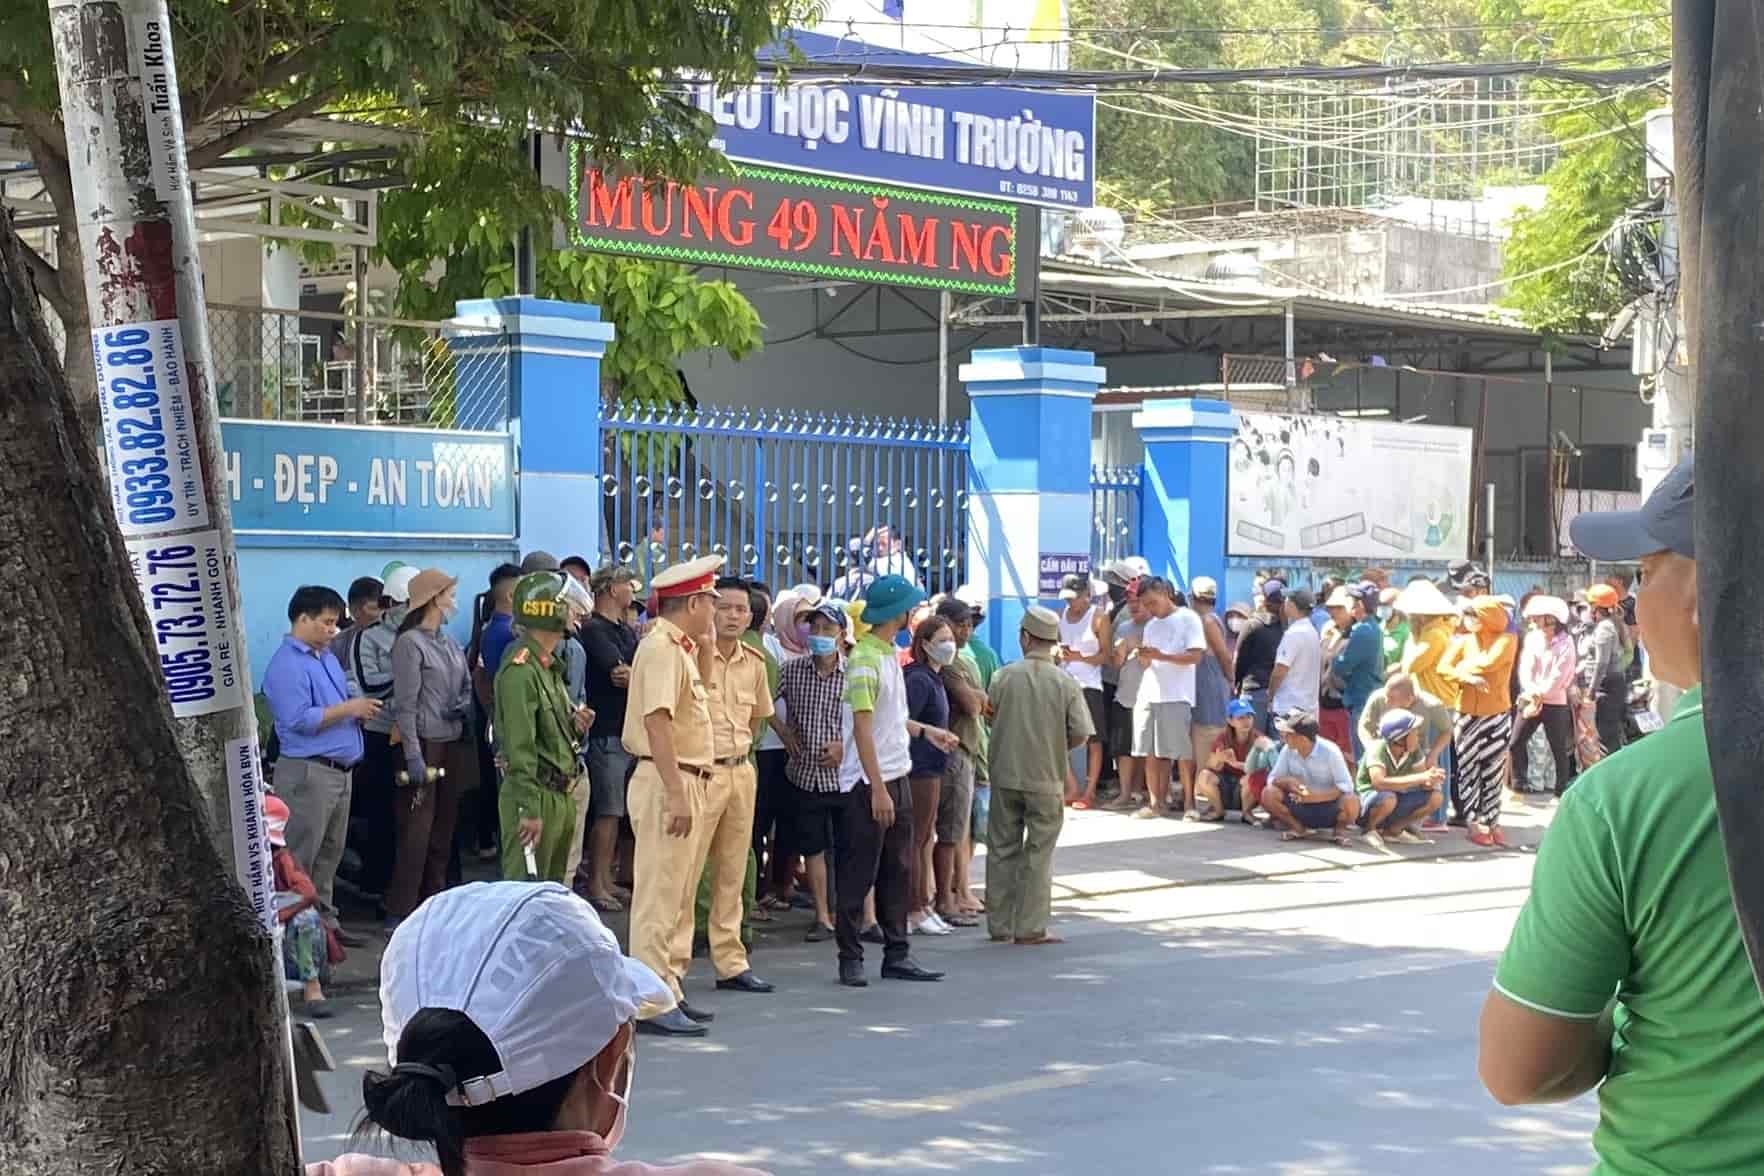 Lực lượng chức năng đảm bảo an ninh trật tự trước cổng trường Tiểu học Vĩnh Trường. Ảnh: Hữu Long